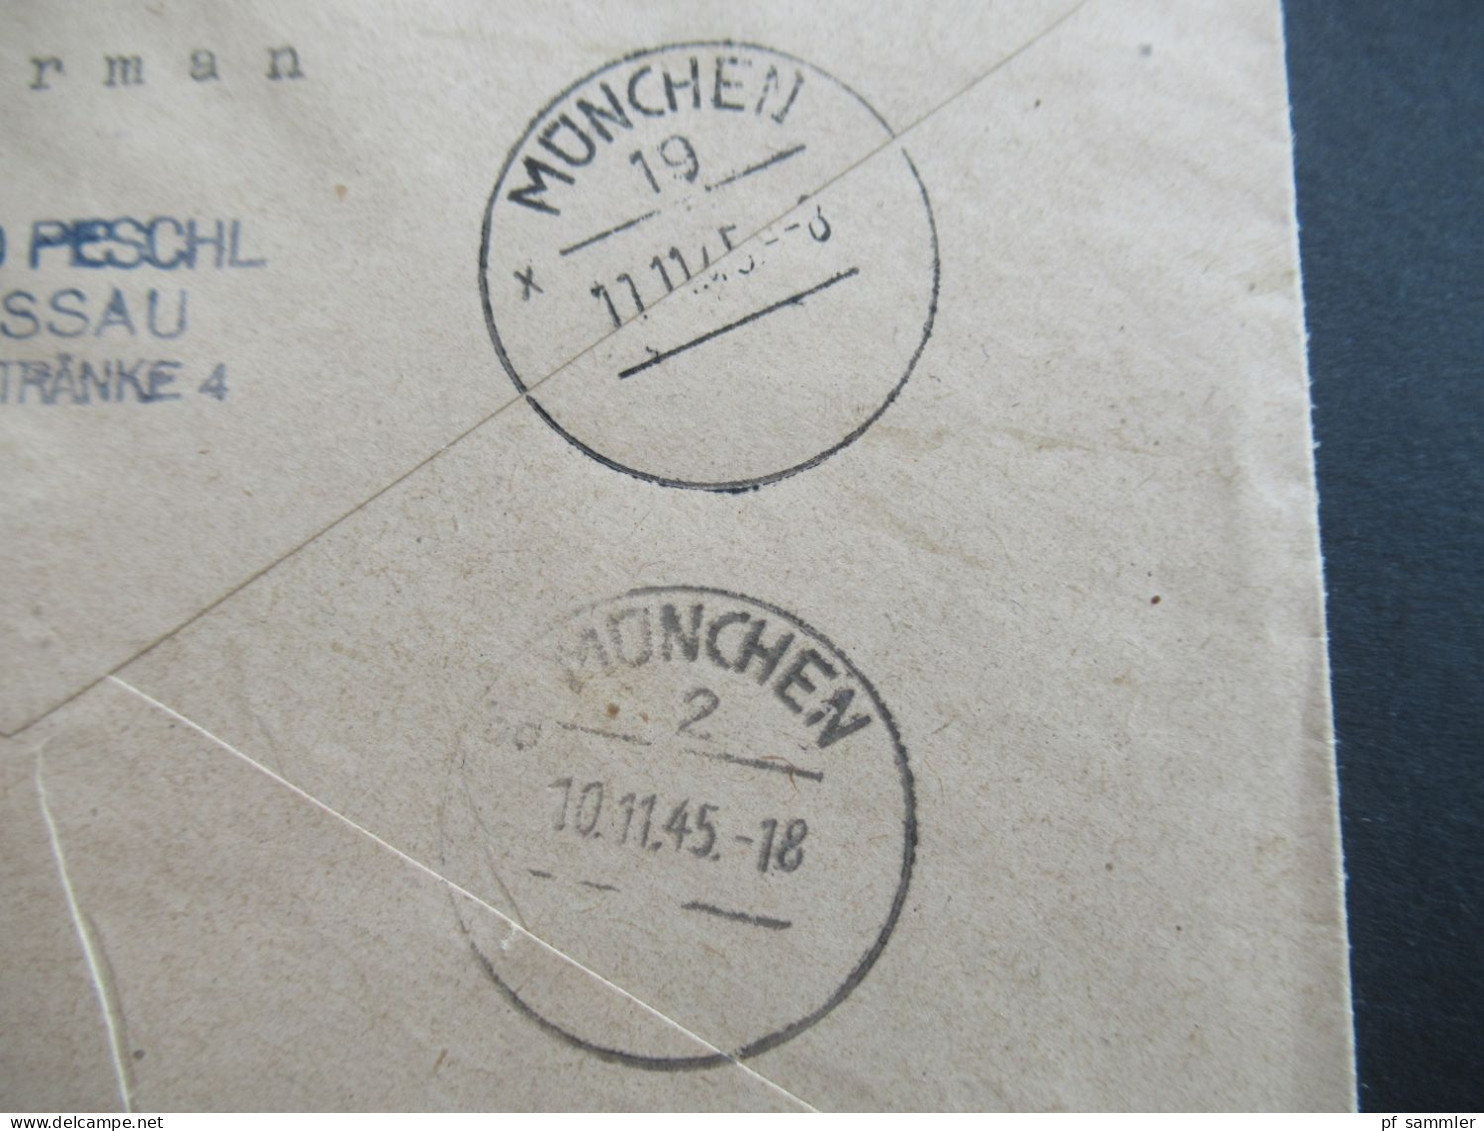 Bizone Am Post 8.11.1945 Nr.6 (3) MeF mit Stempel Ra1 Gebühr bezahlt Einschreiben Passau 2 - München / Brauerei Peschl